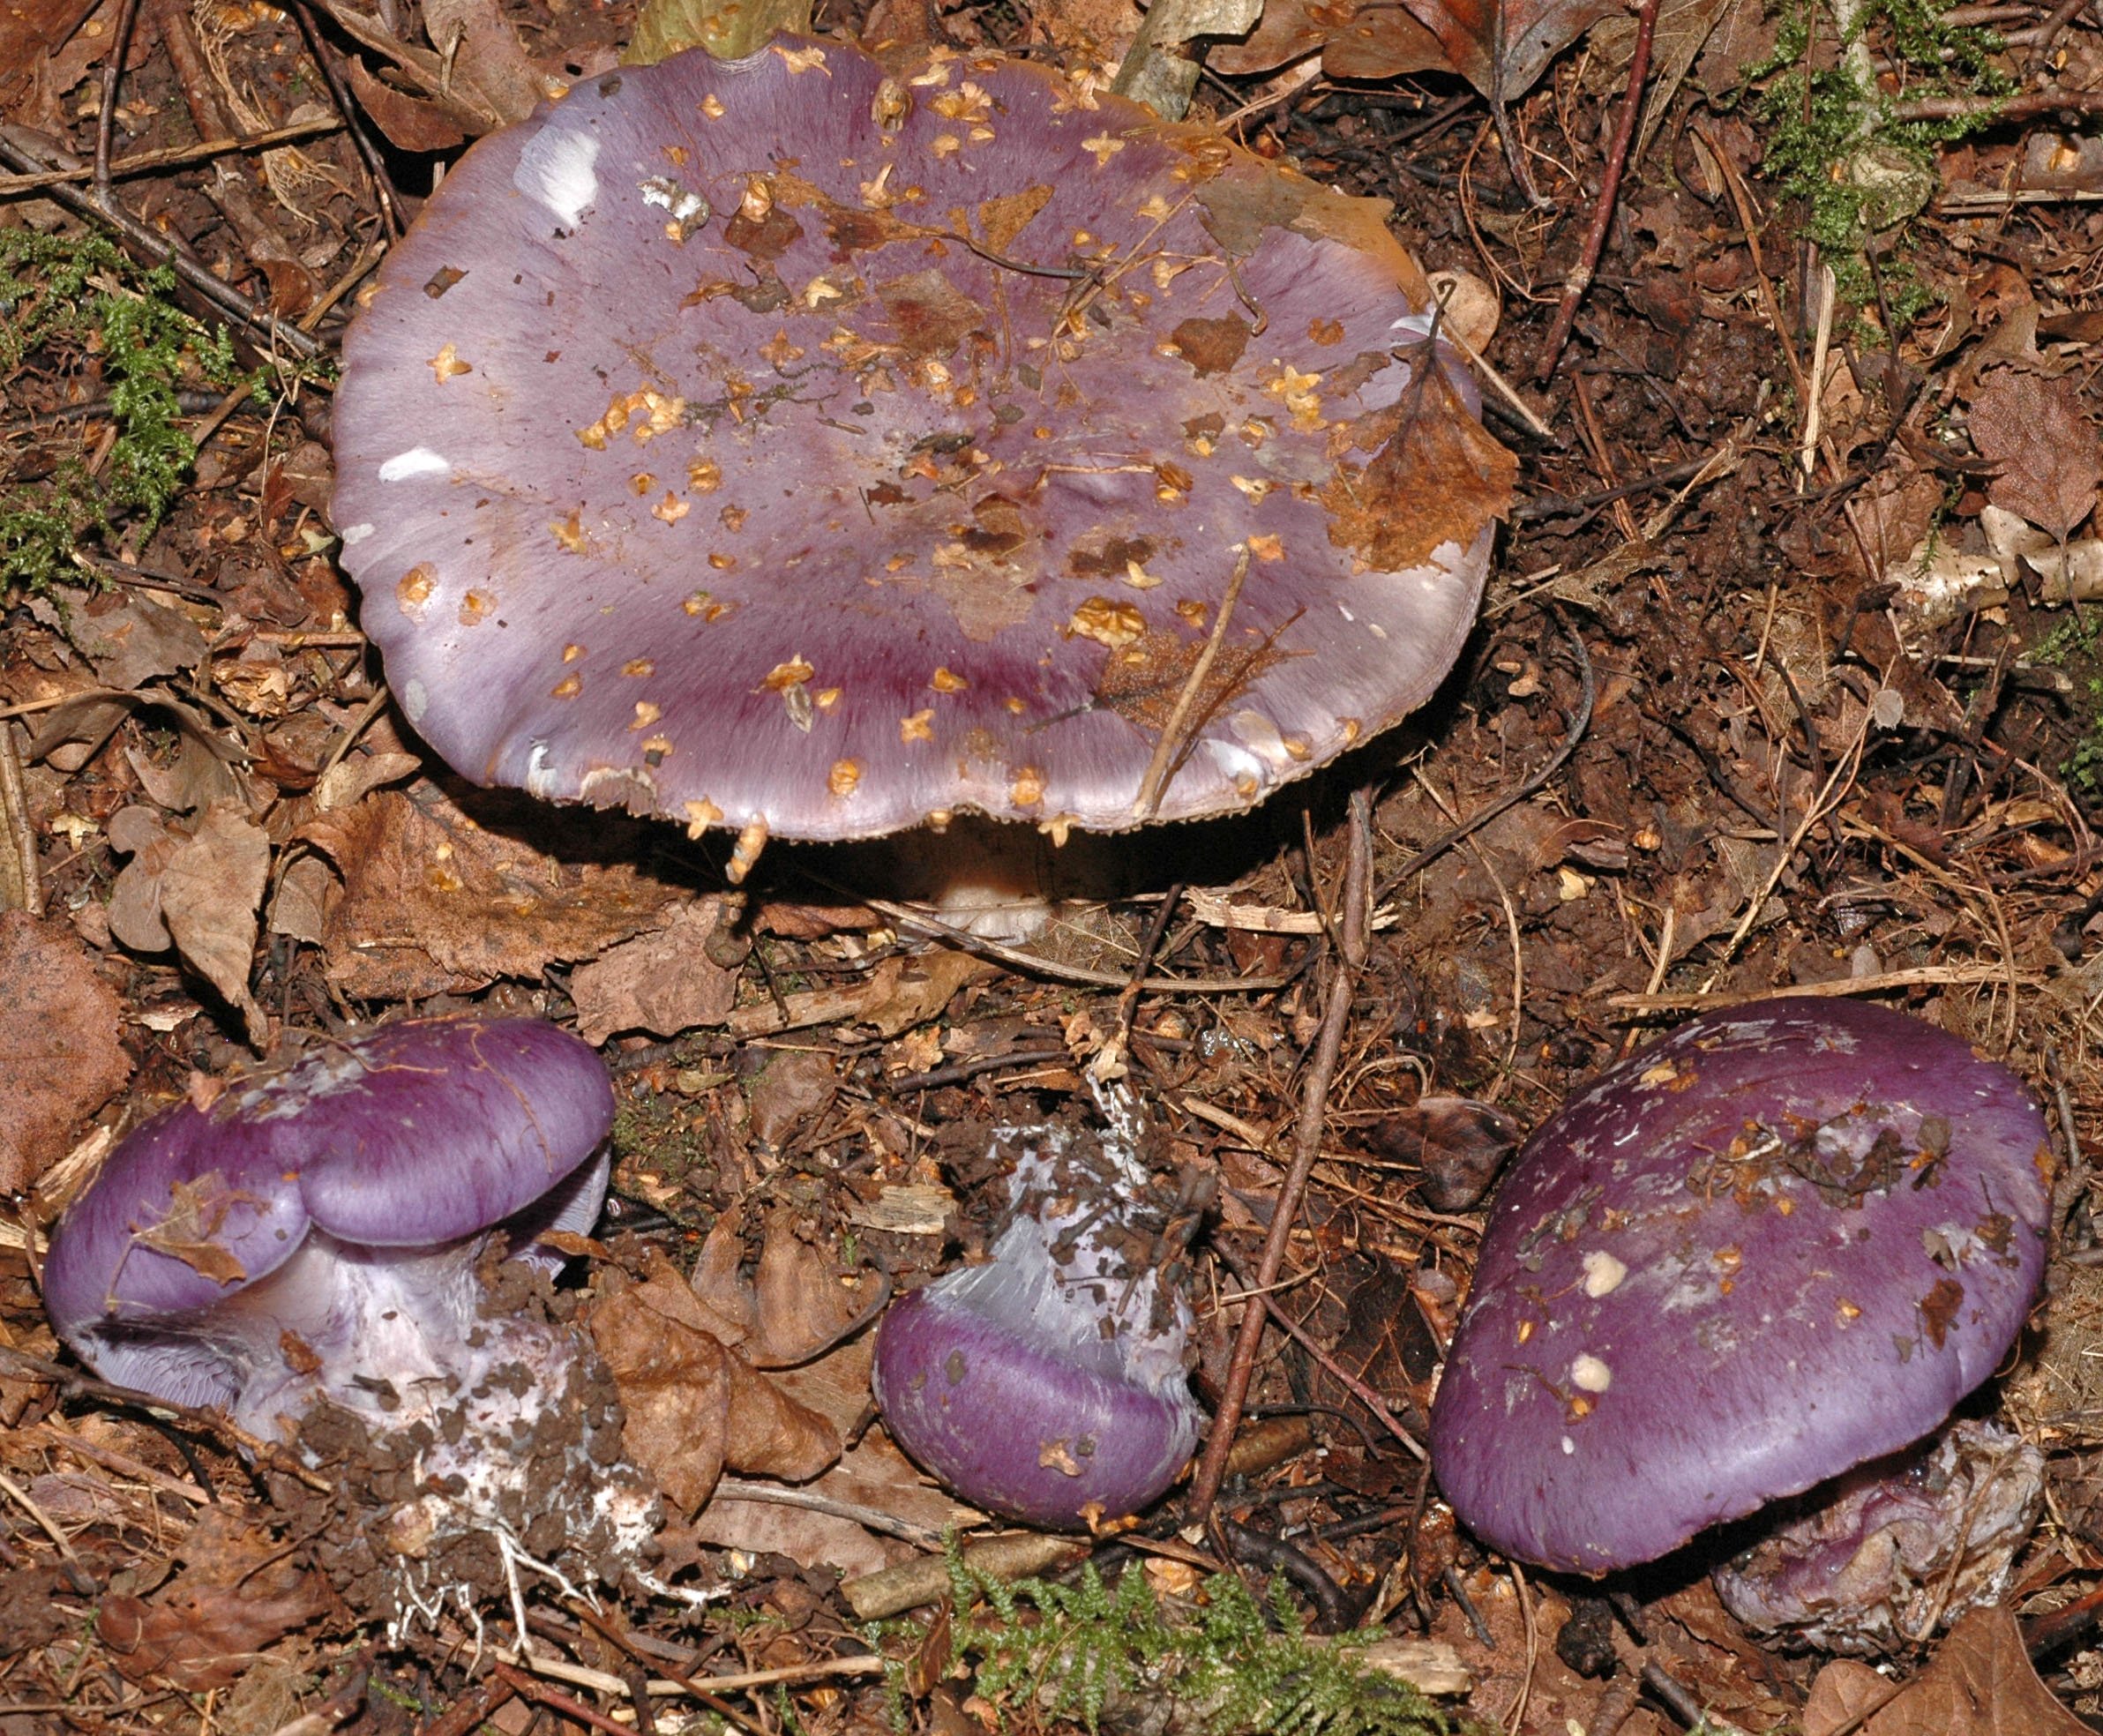 сиреневые грибы фото и их